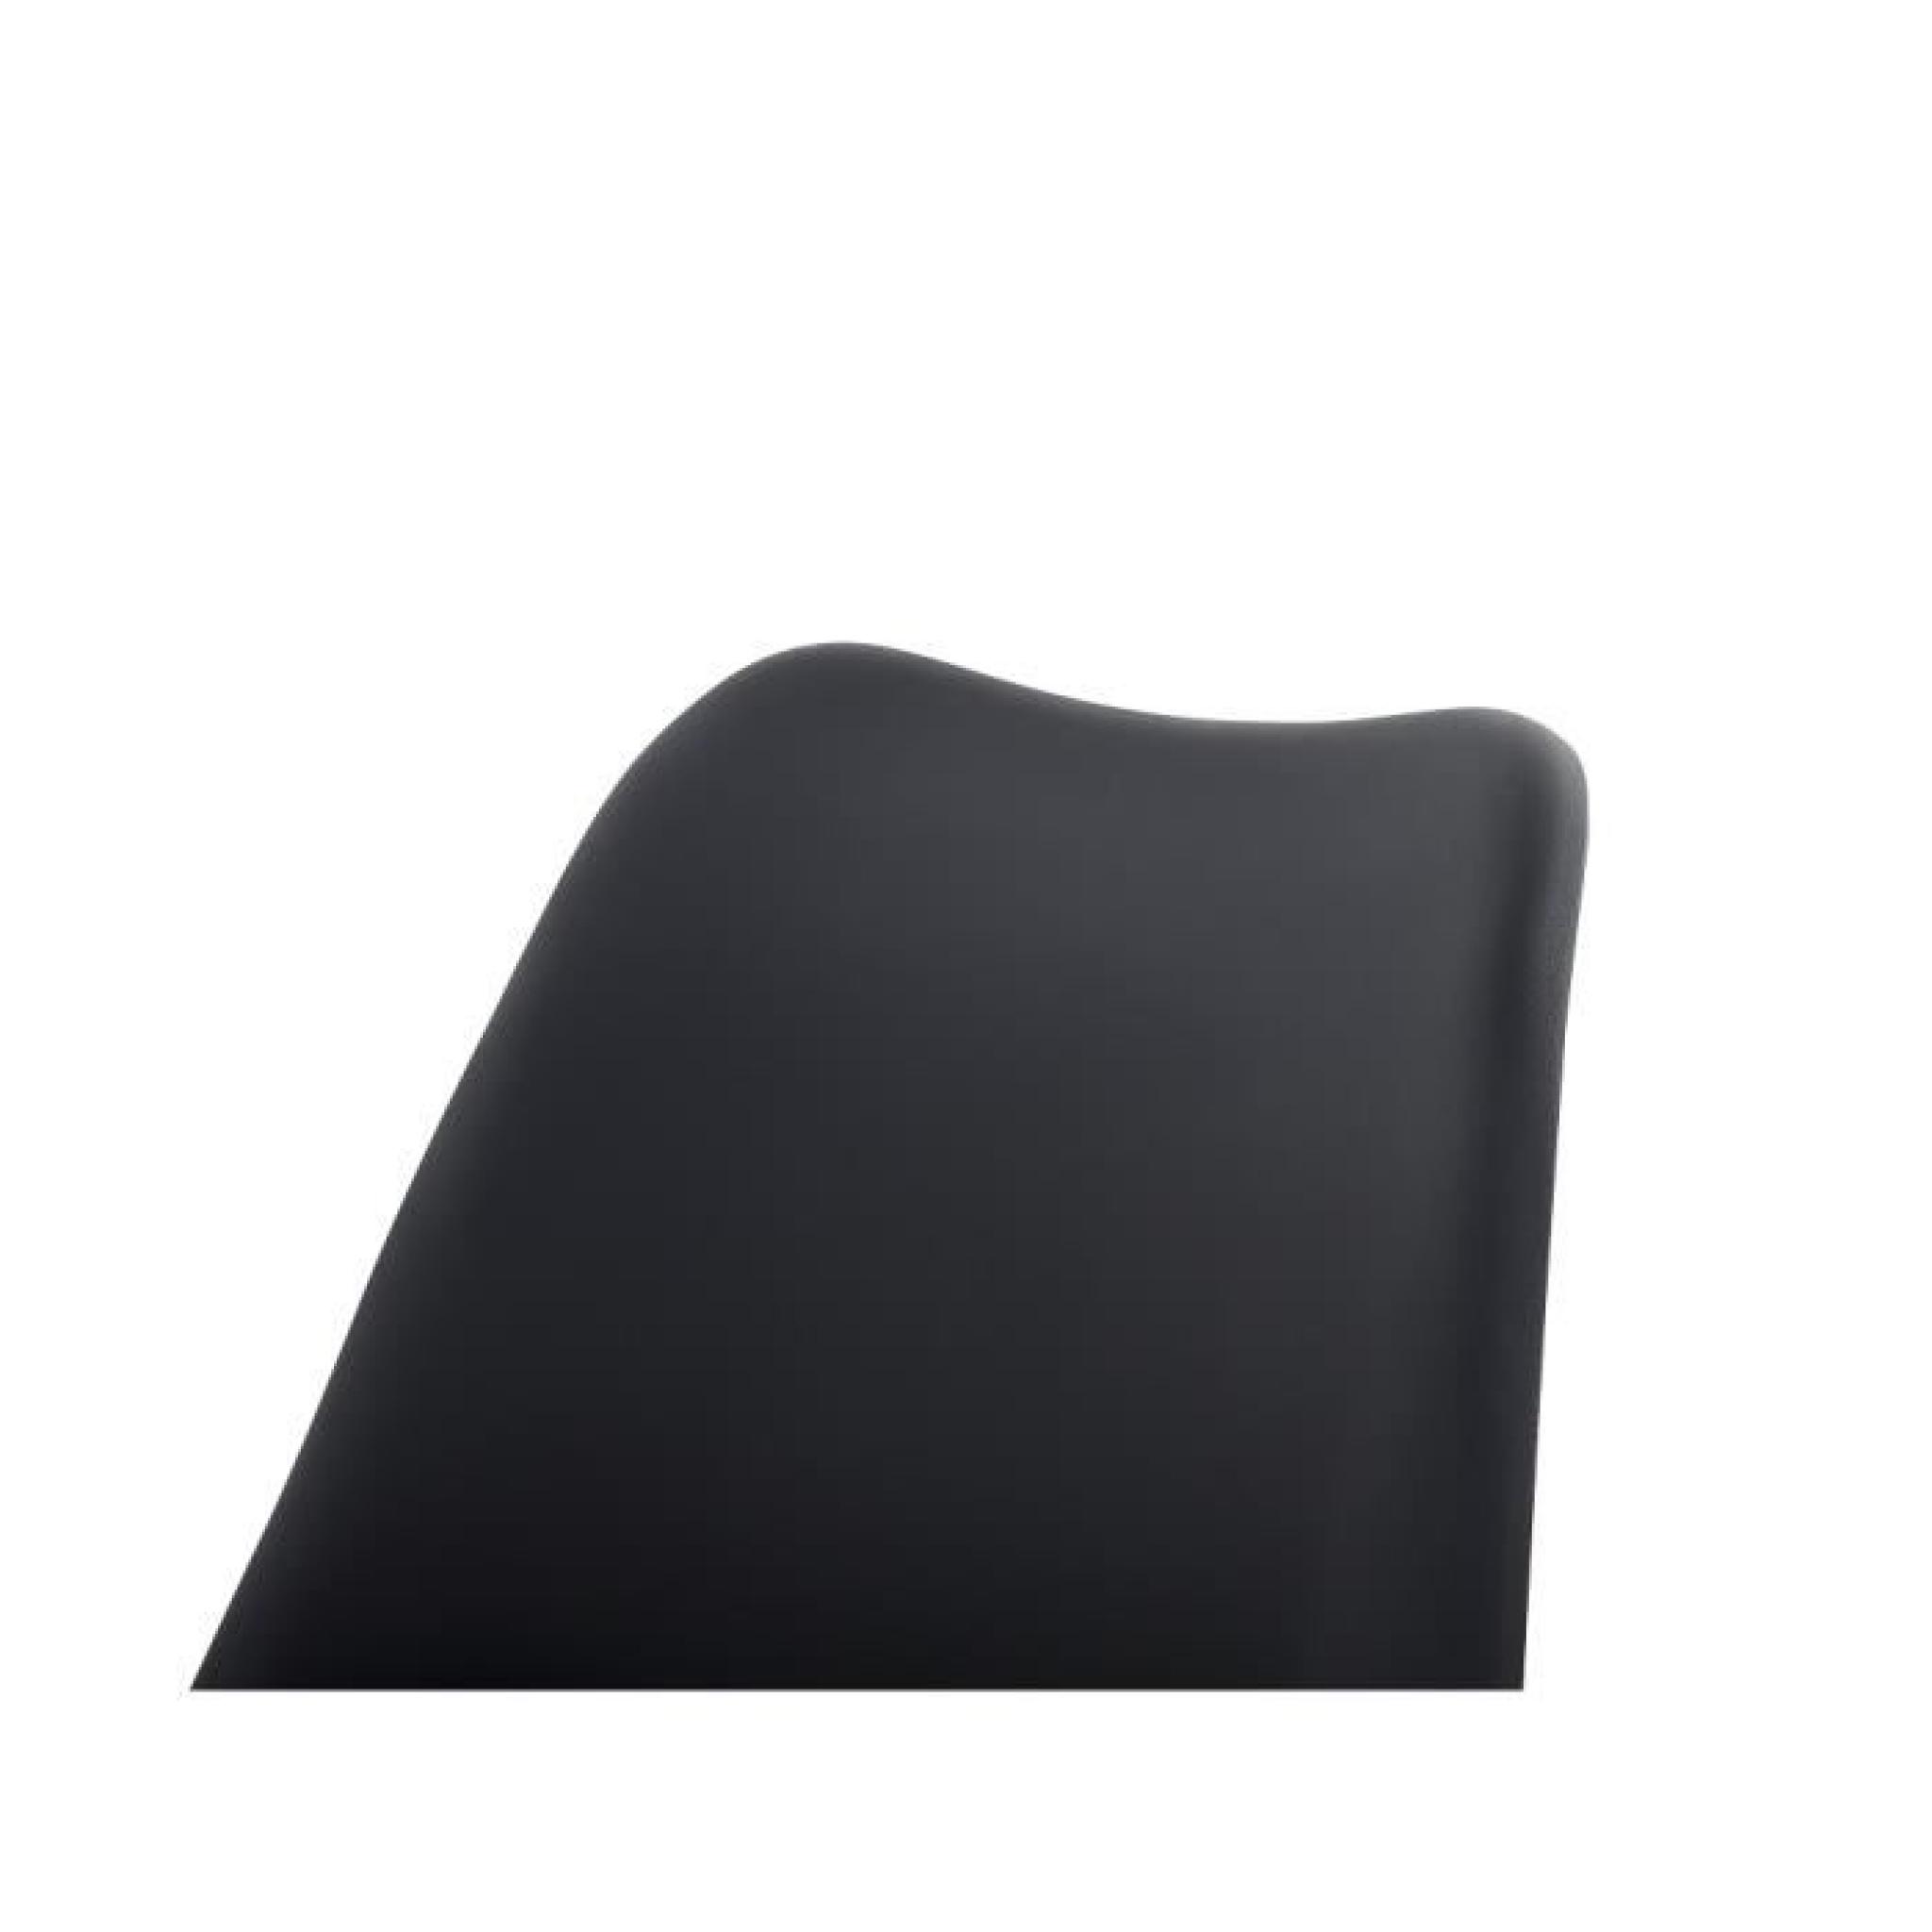 Chaise design - siège en plastique noir - Moca pas cher